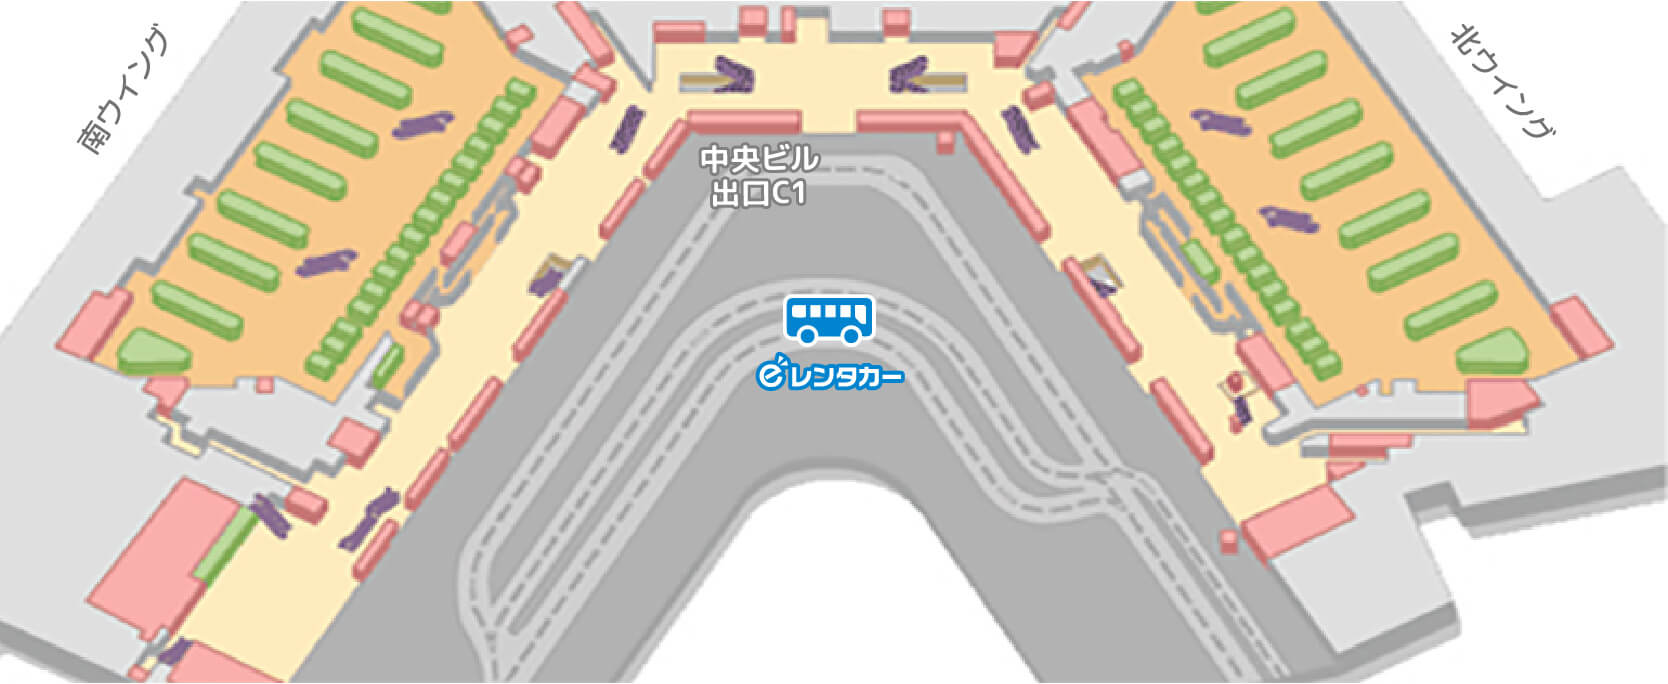 第一ターミナルバス停車位置